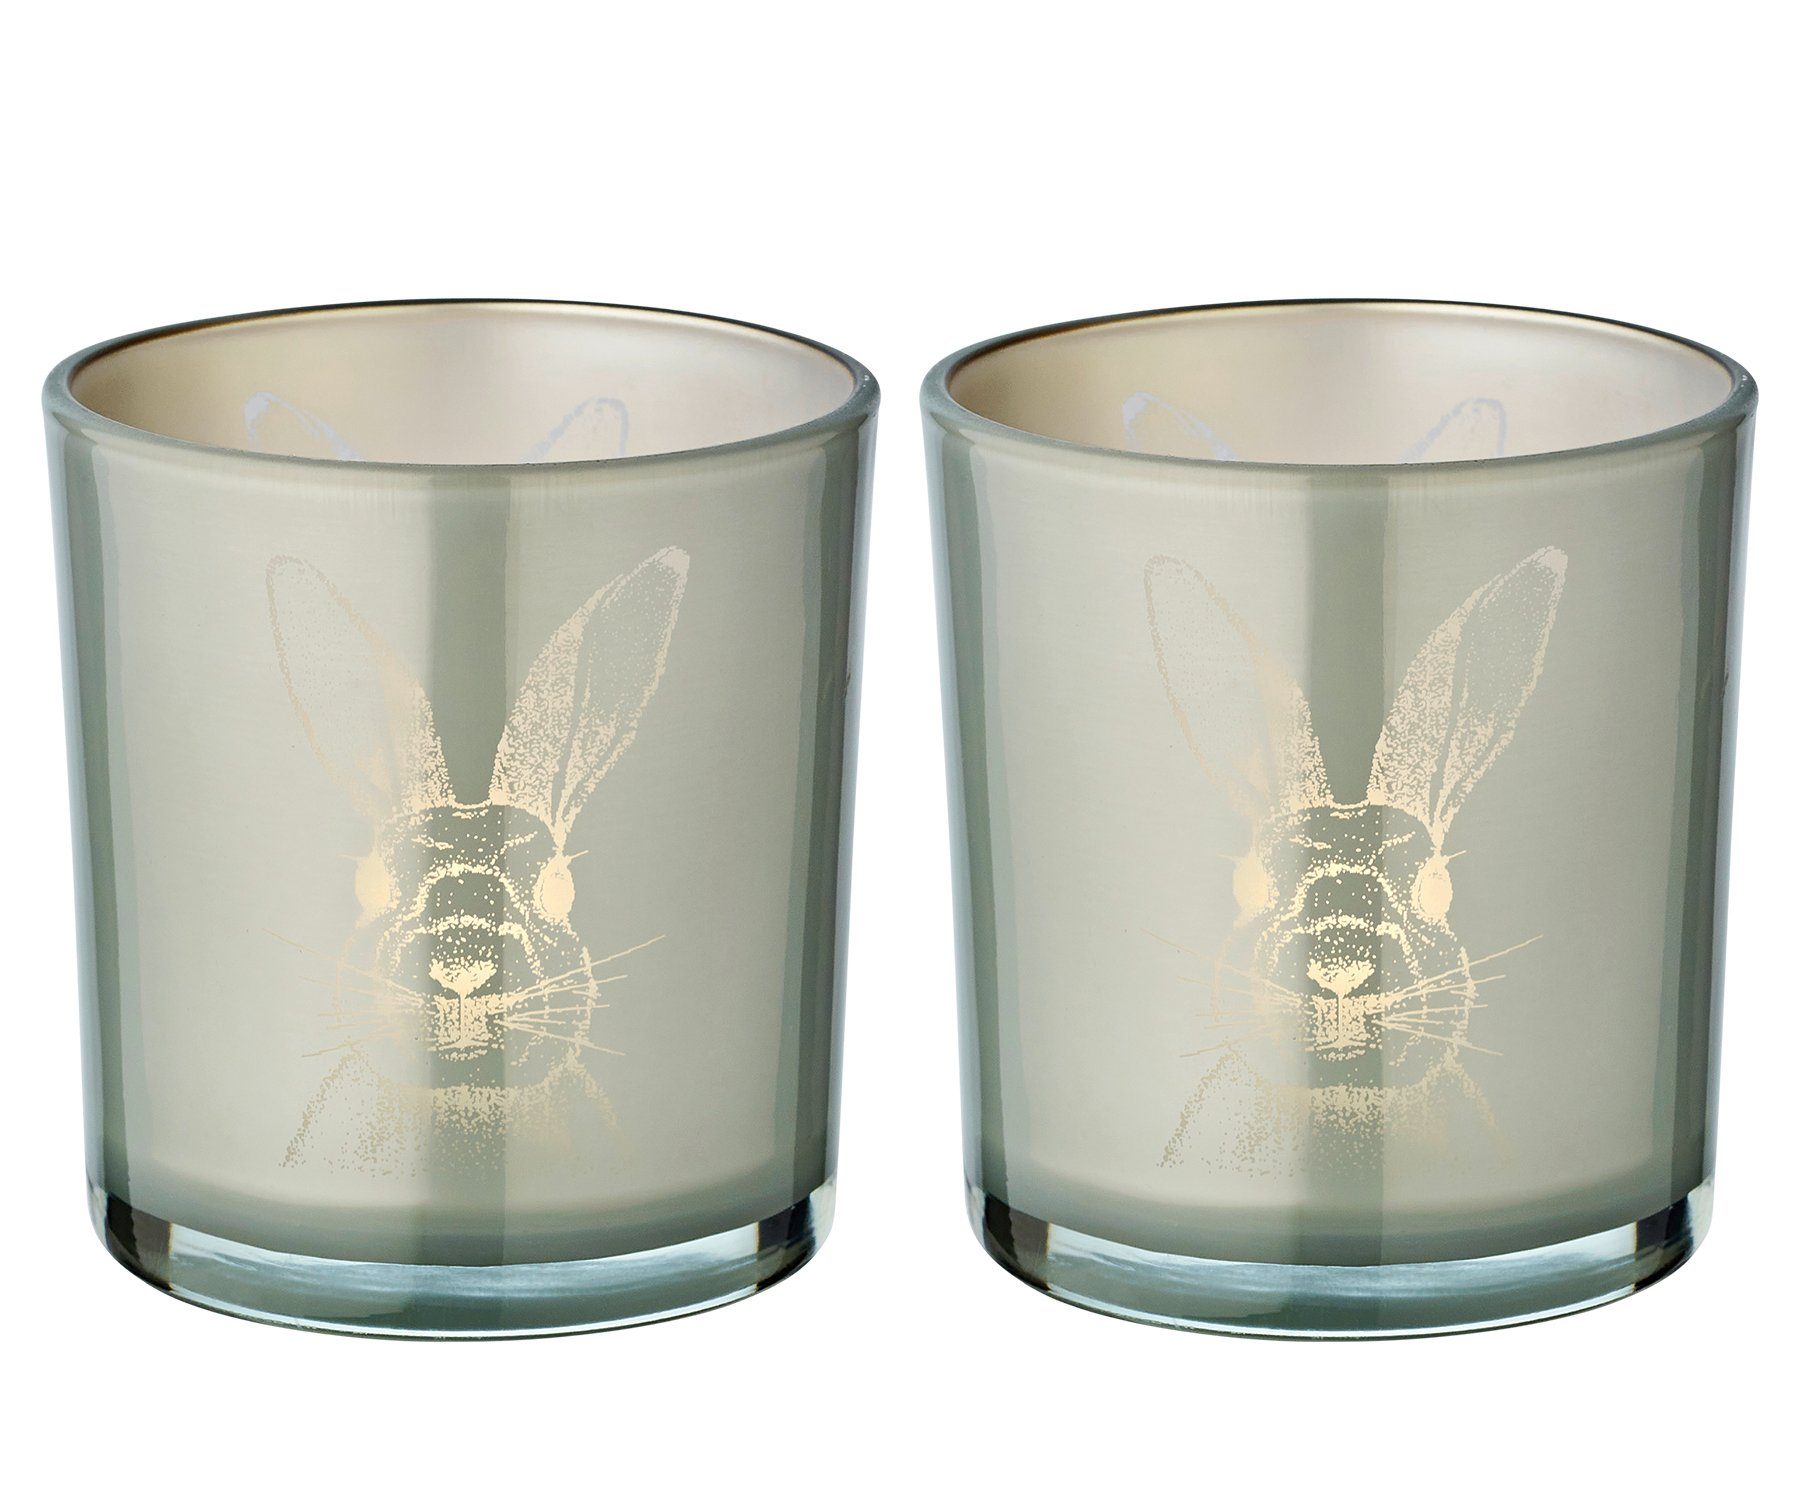 EDZARD Windlicht Hase (Set, 2er), Höhe 8 cm, Ø 7,5 cm, Windlicht, Kerzenglas mit Hasen-Motiv in gräulicher Optik, Teelichtglas für Teelichter